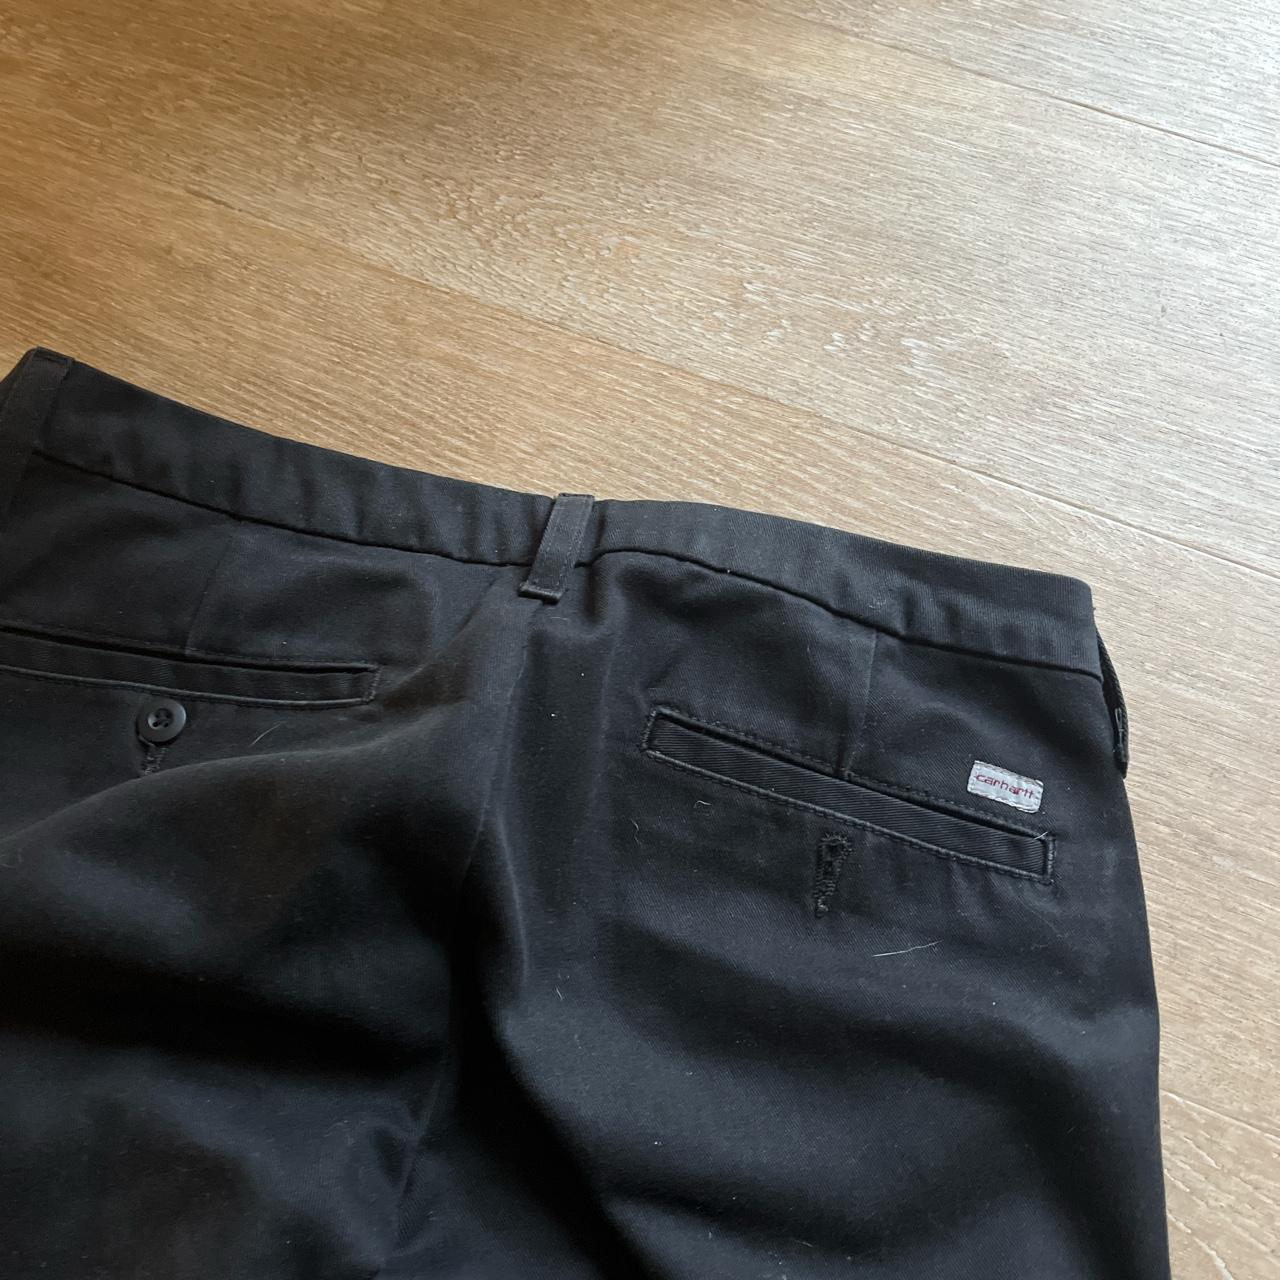 Women’s Carhartt trousers in black in 28 waist 32... - Depop